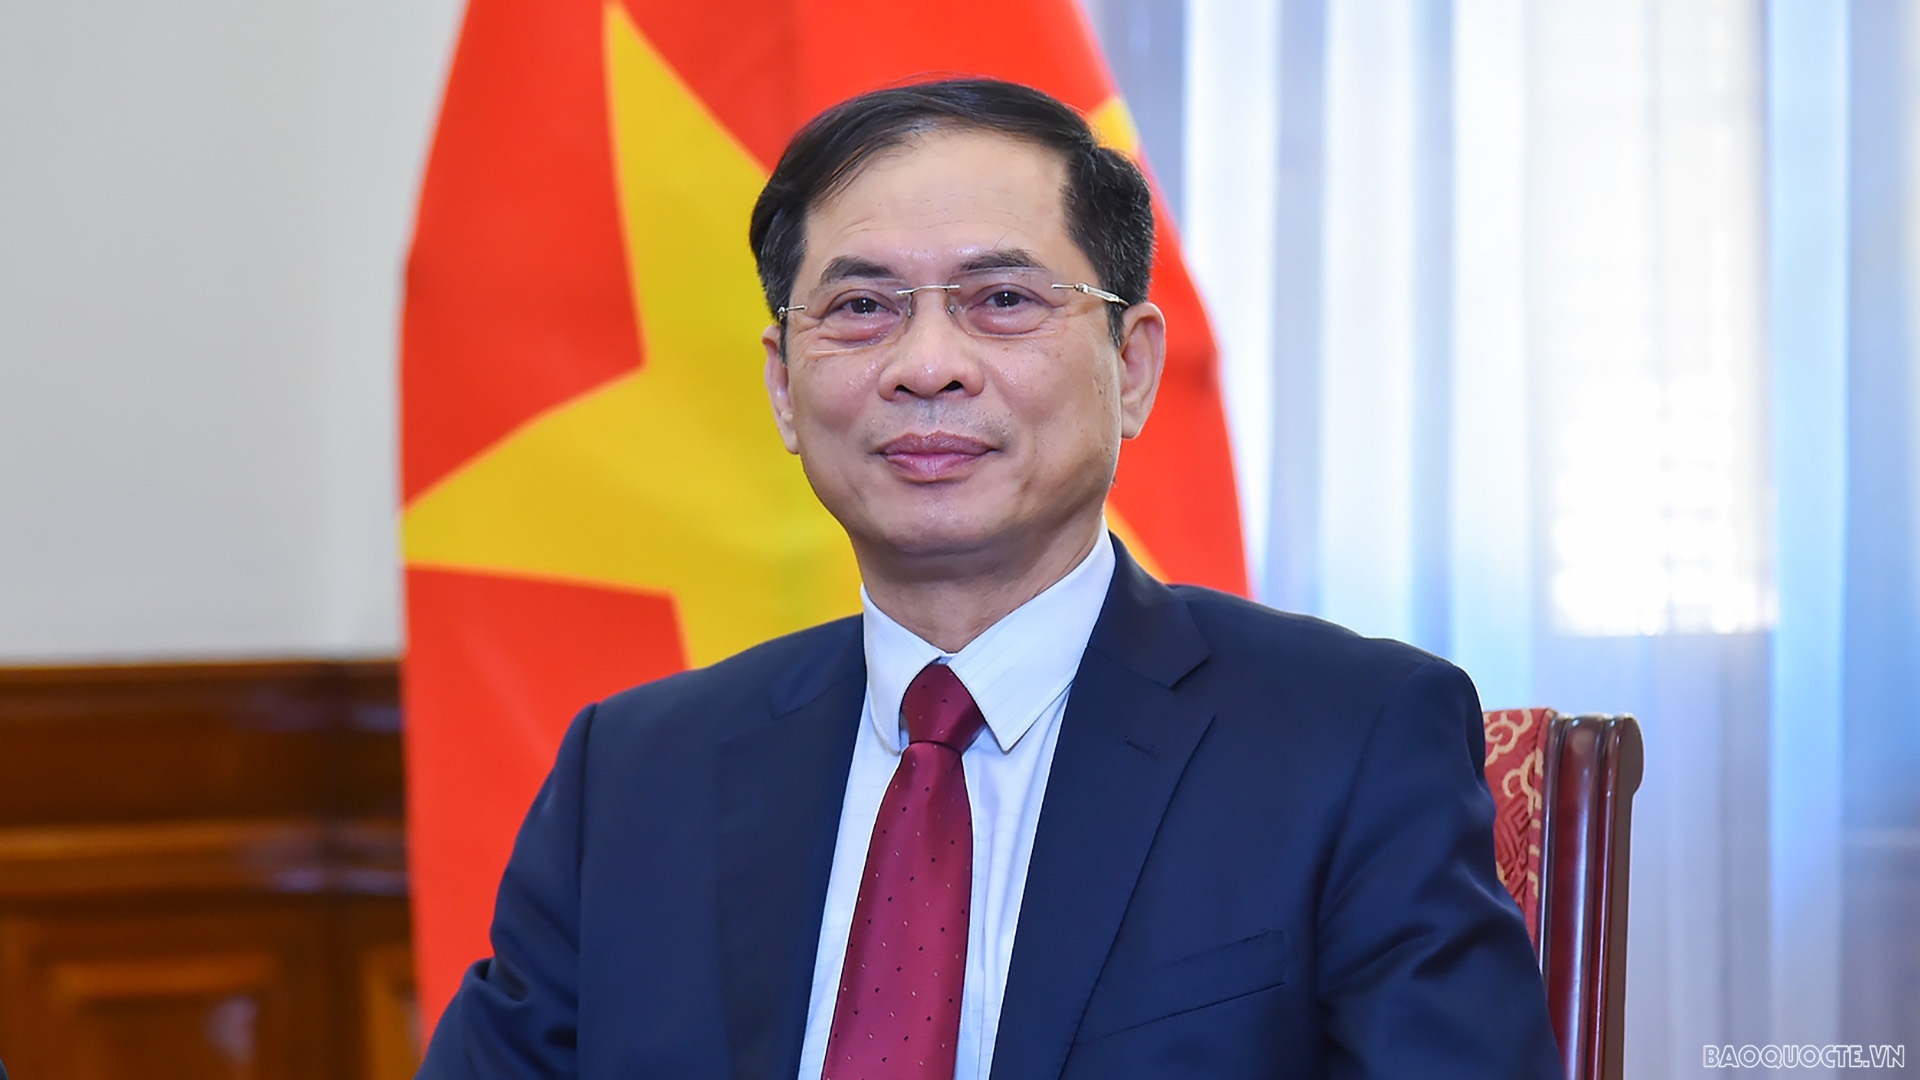 Bộ trưởng Ngoại giao Bùi Thanh Sơn sắp thăm chính thức Trung Quốc- Ảnh 1.